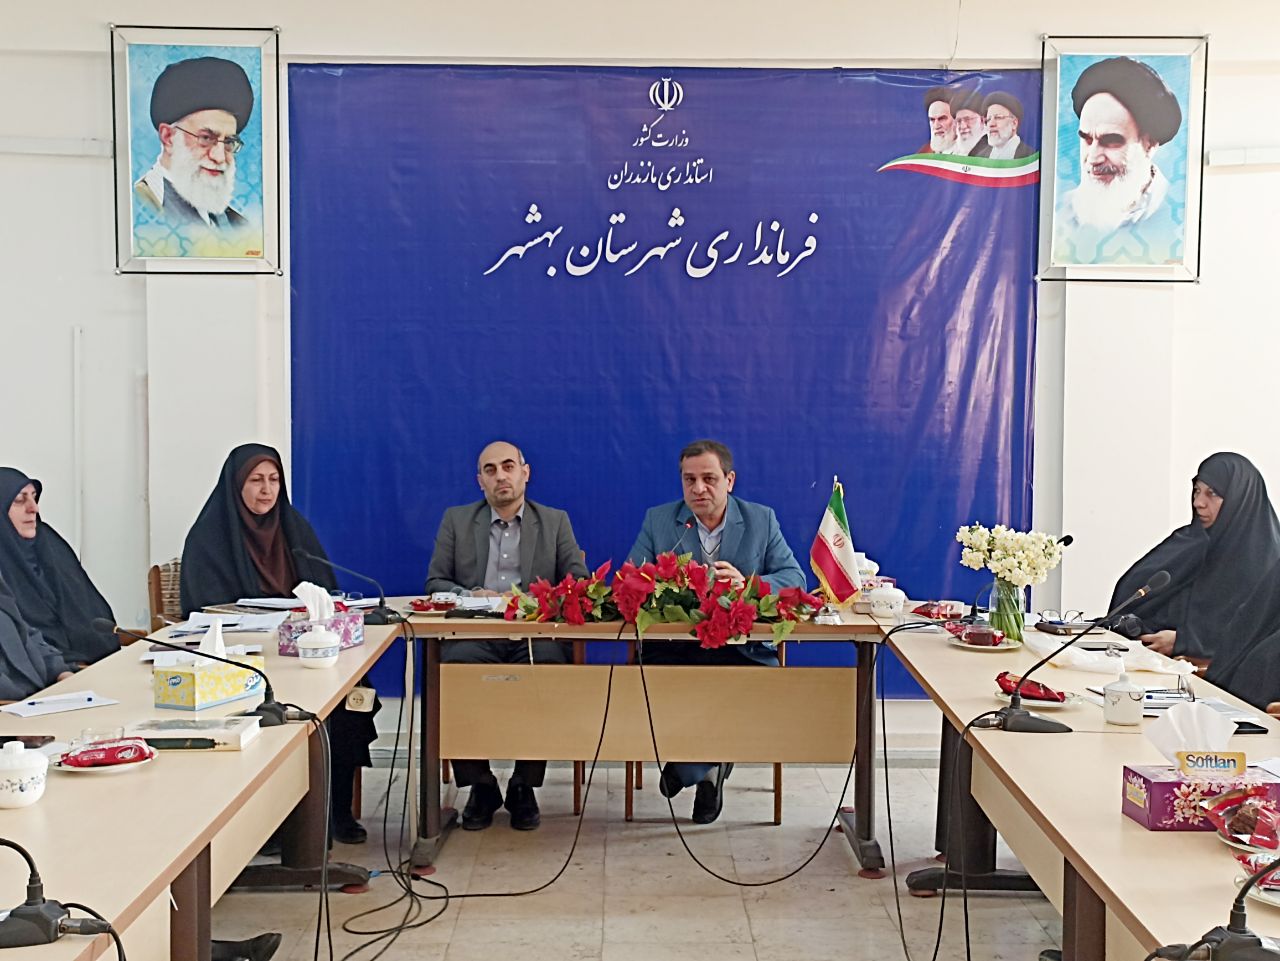 برگزاری جلسه کارگروه زنان و خانواده در فرمانداری بهشهر